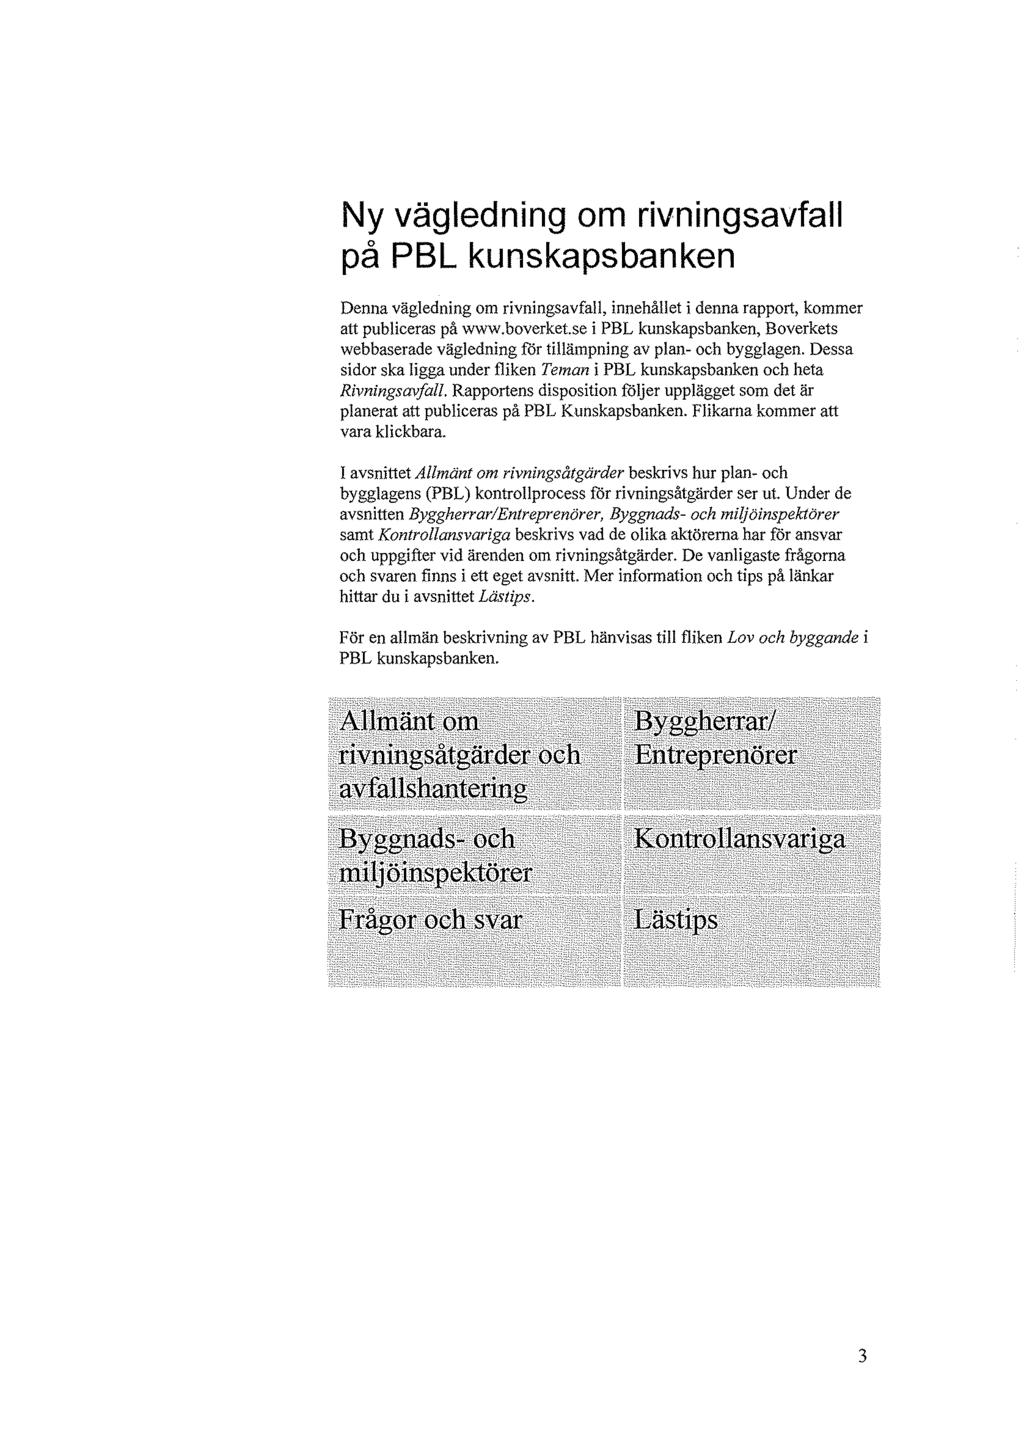 Ny vägledning om rivningsavfall på PBL kunskapsbanken Denna vägledning om rivningsavfall, innehållet i denna rapport, kommer att publiceras på www.boverket.